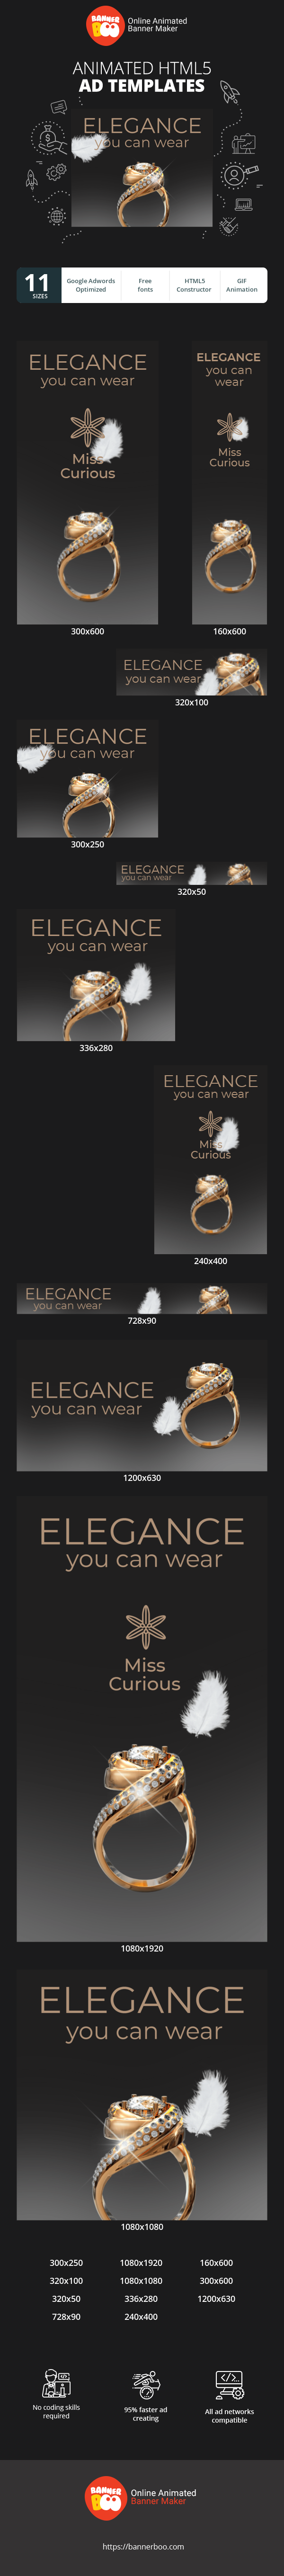 Шаблон рекламного банера — Elegance You Can Wear —Jewelry Store